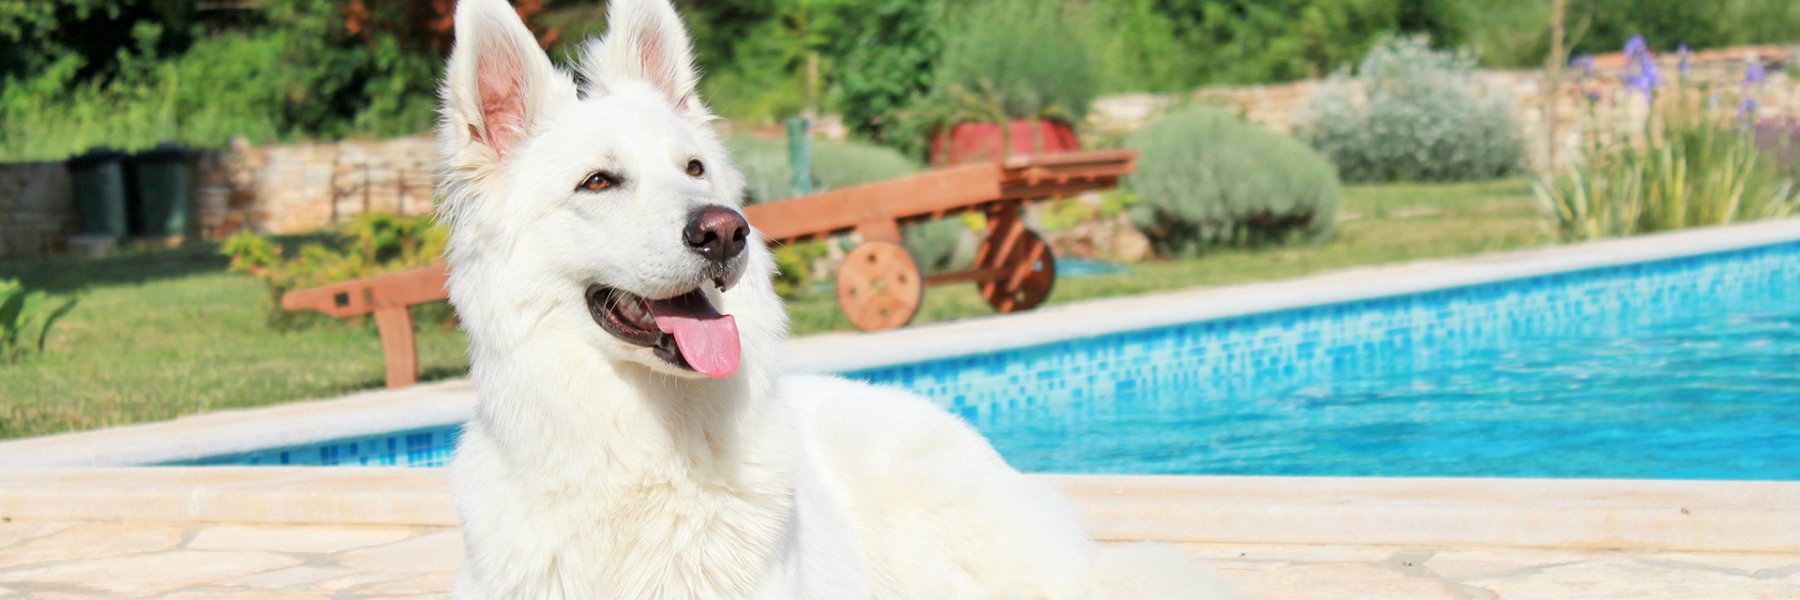 Ferienhaus Urlaub mit Hund in Kroatien